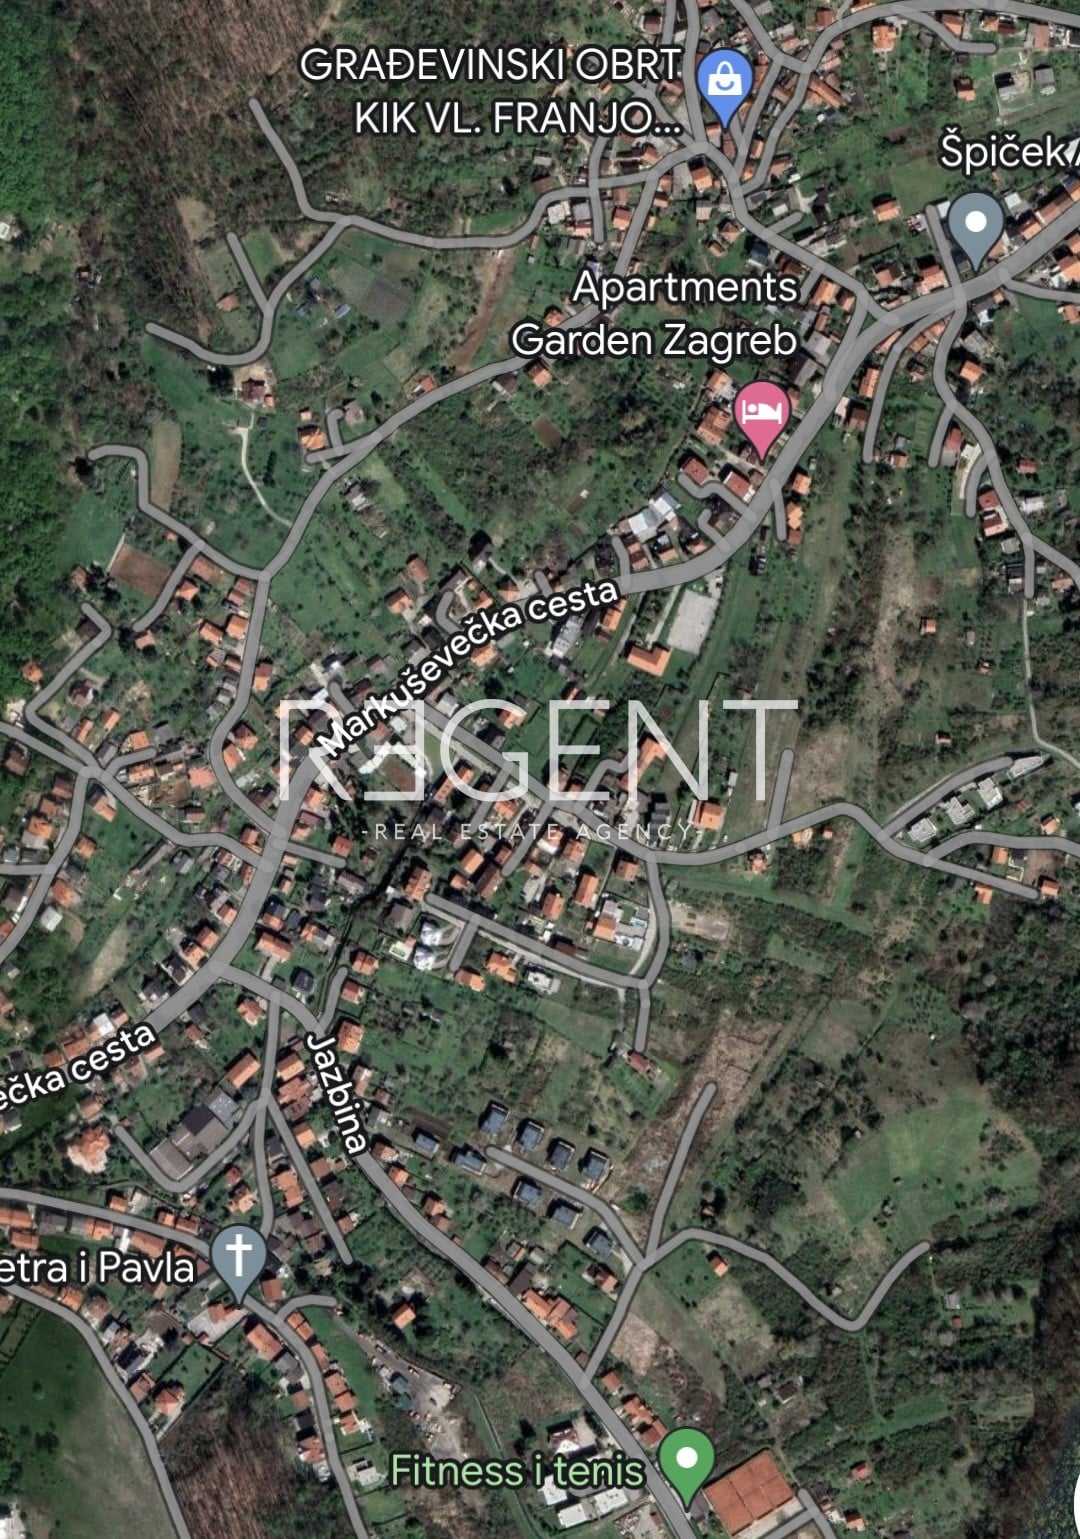 Condominium in Gracani, Zagreb, Grad 12392504